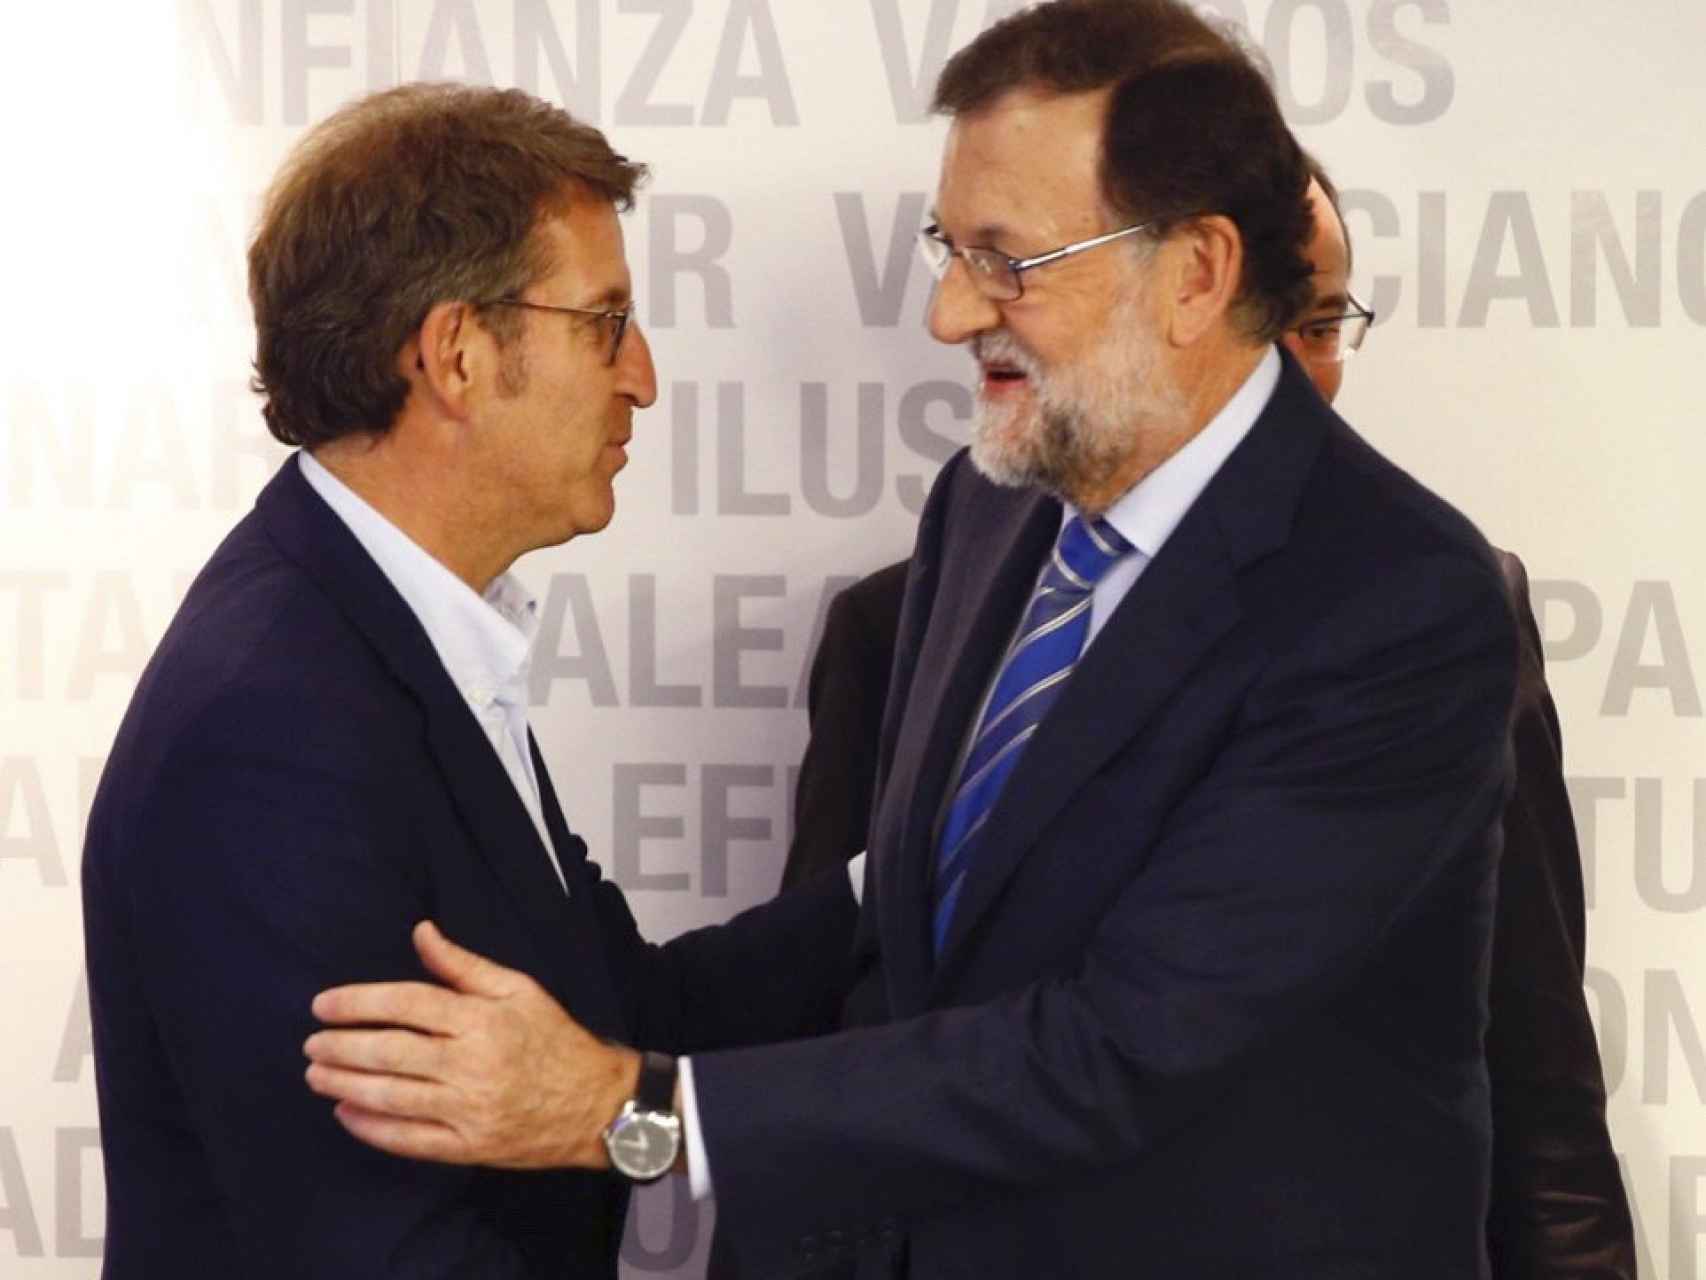 El líder del PP, Mariano Rajoy saluda al presidente de la Xunta, Alberto Núñez Feijoó.